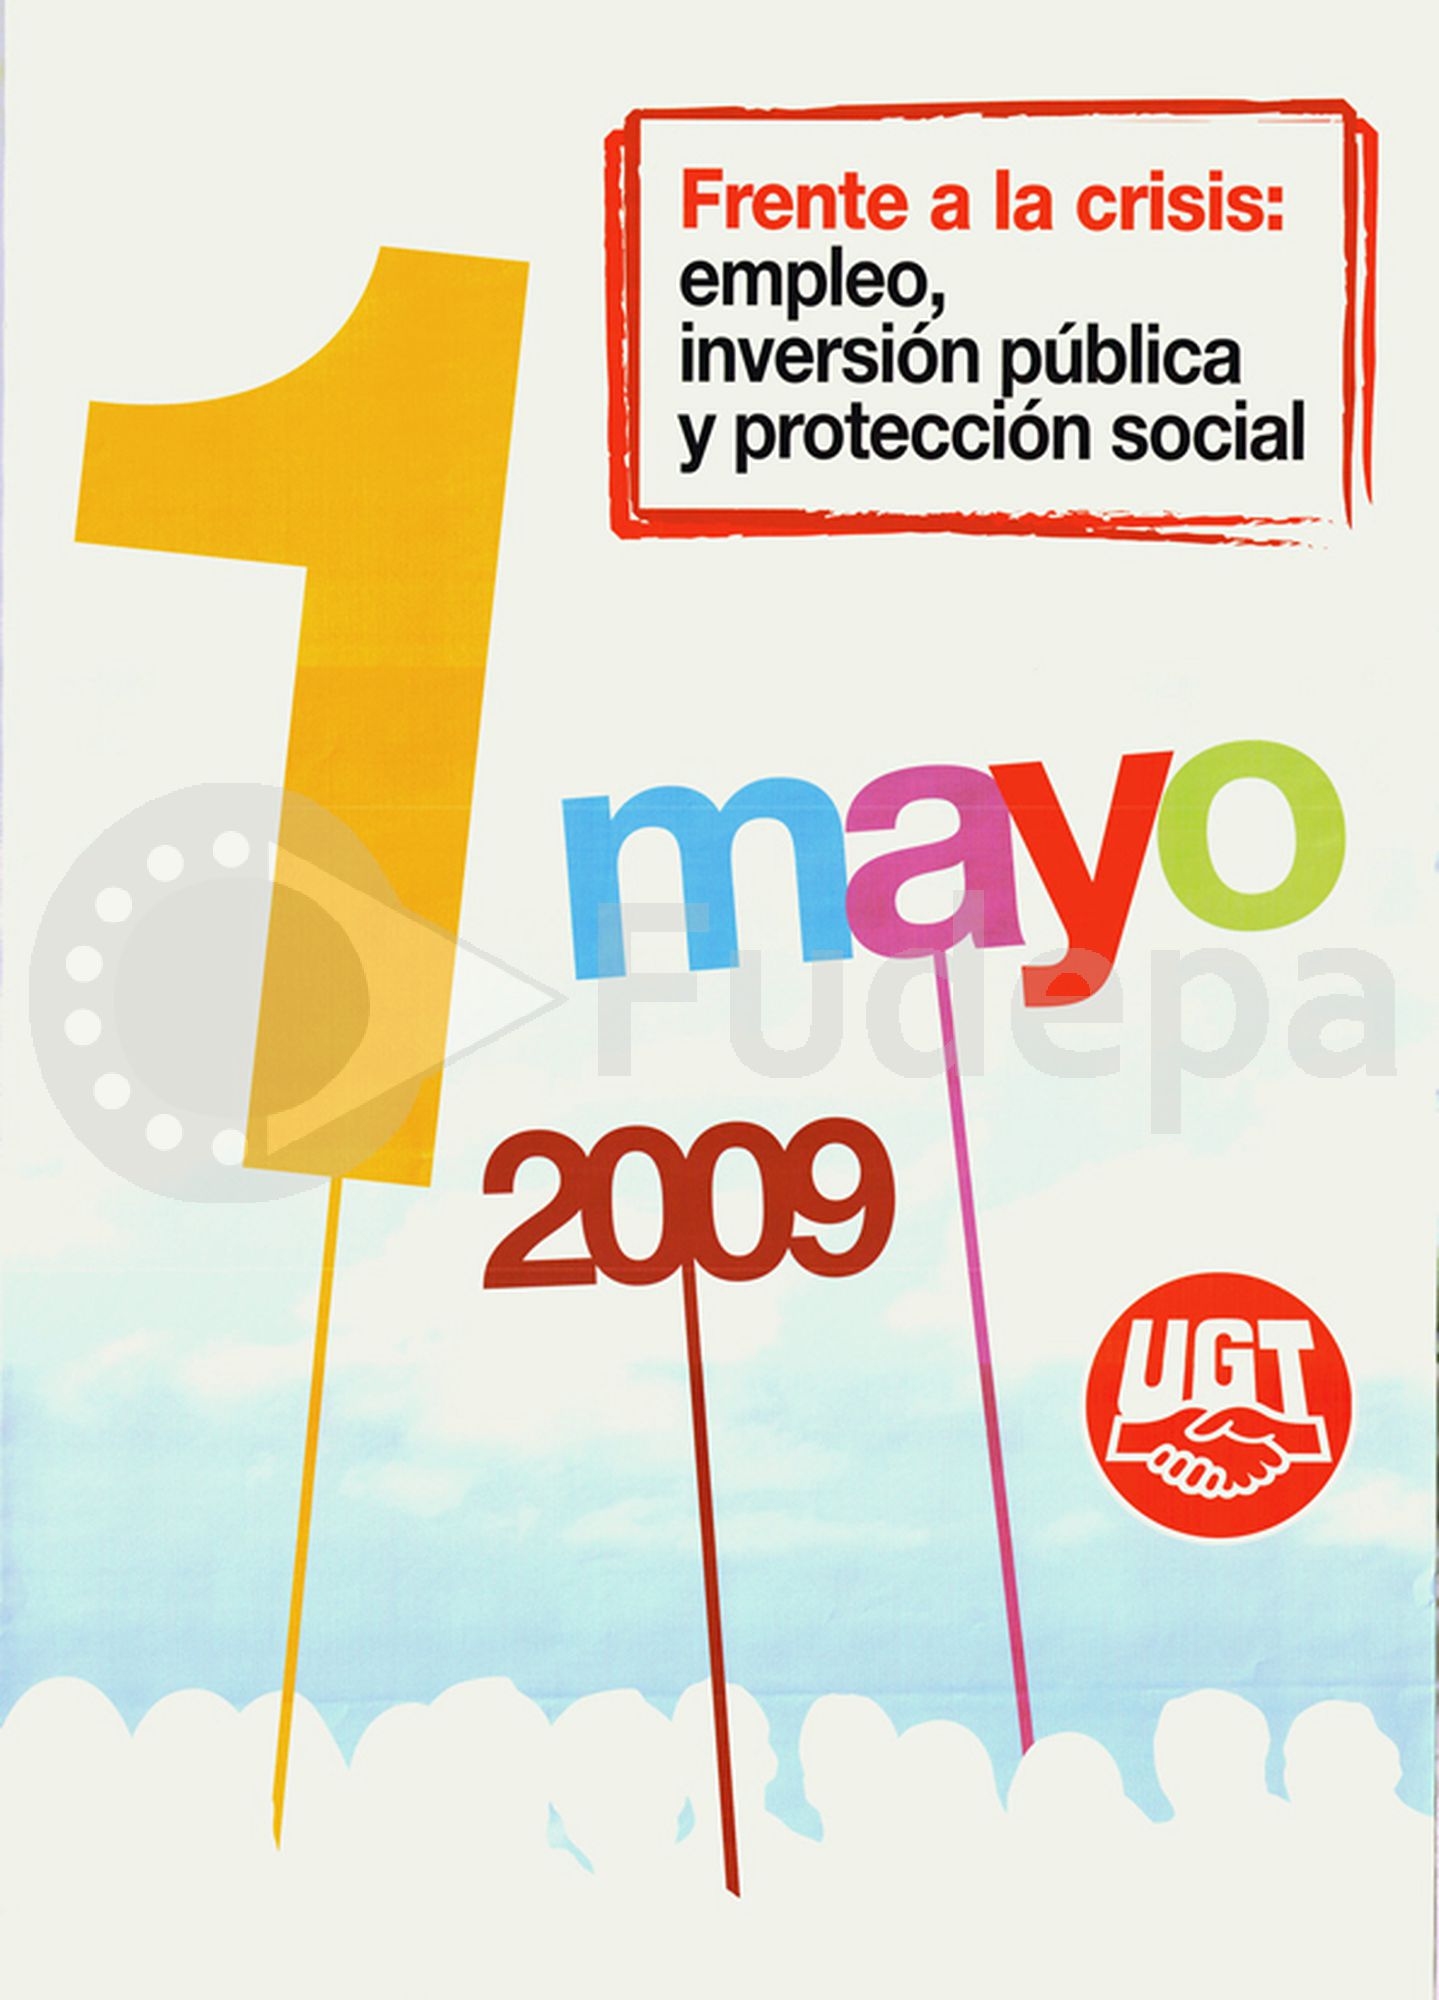 2009: Frente a la crisis: empleo, inversión pública y protección social